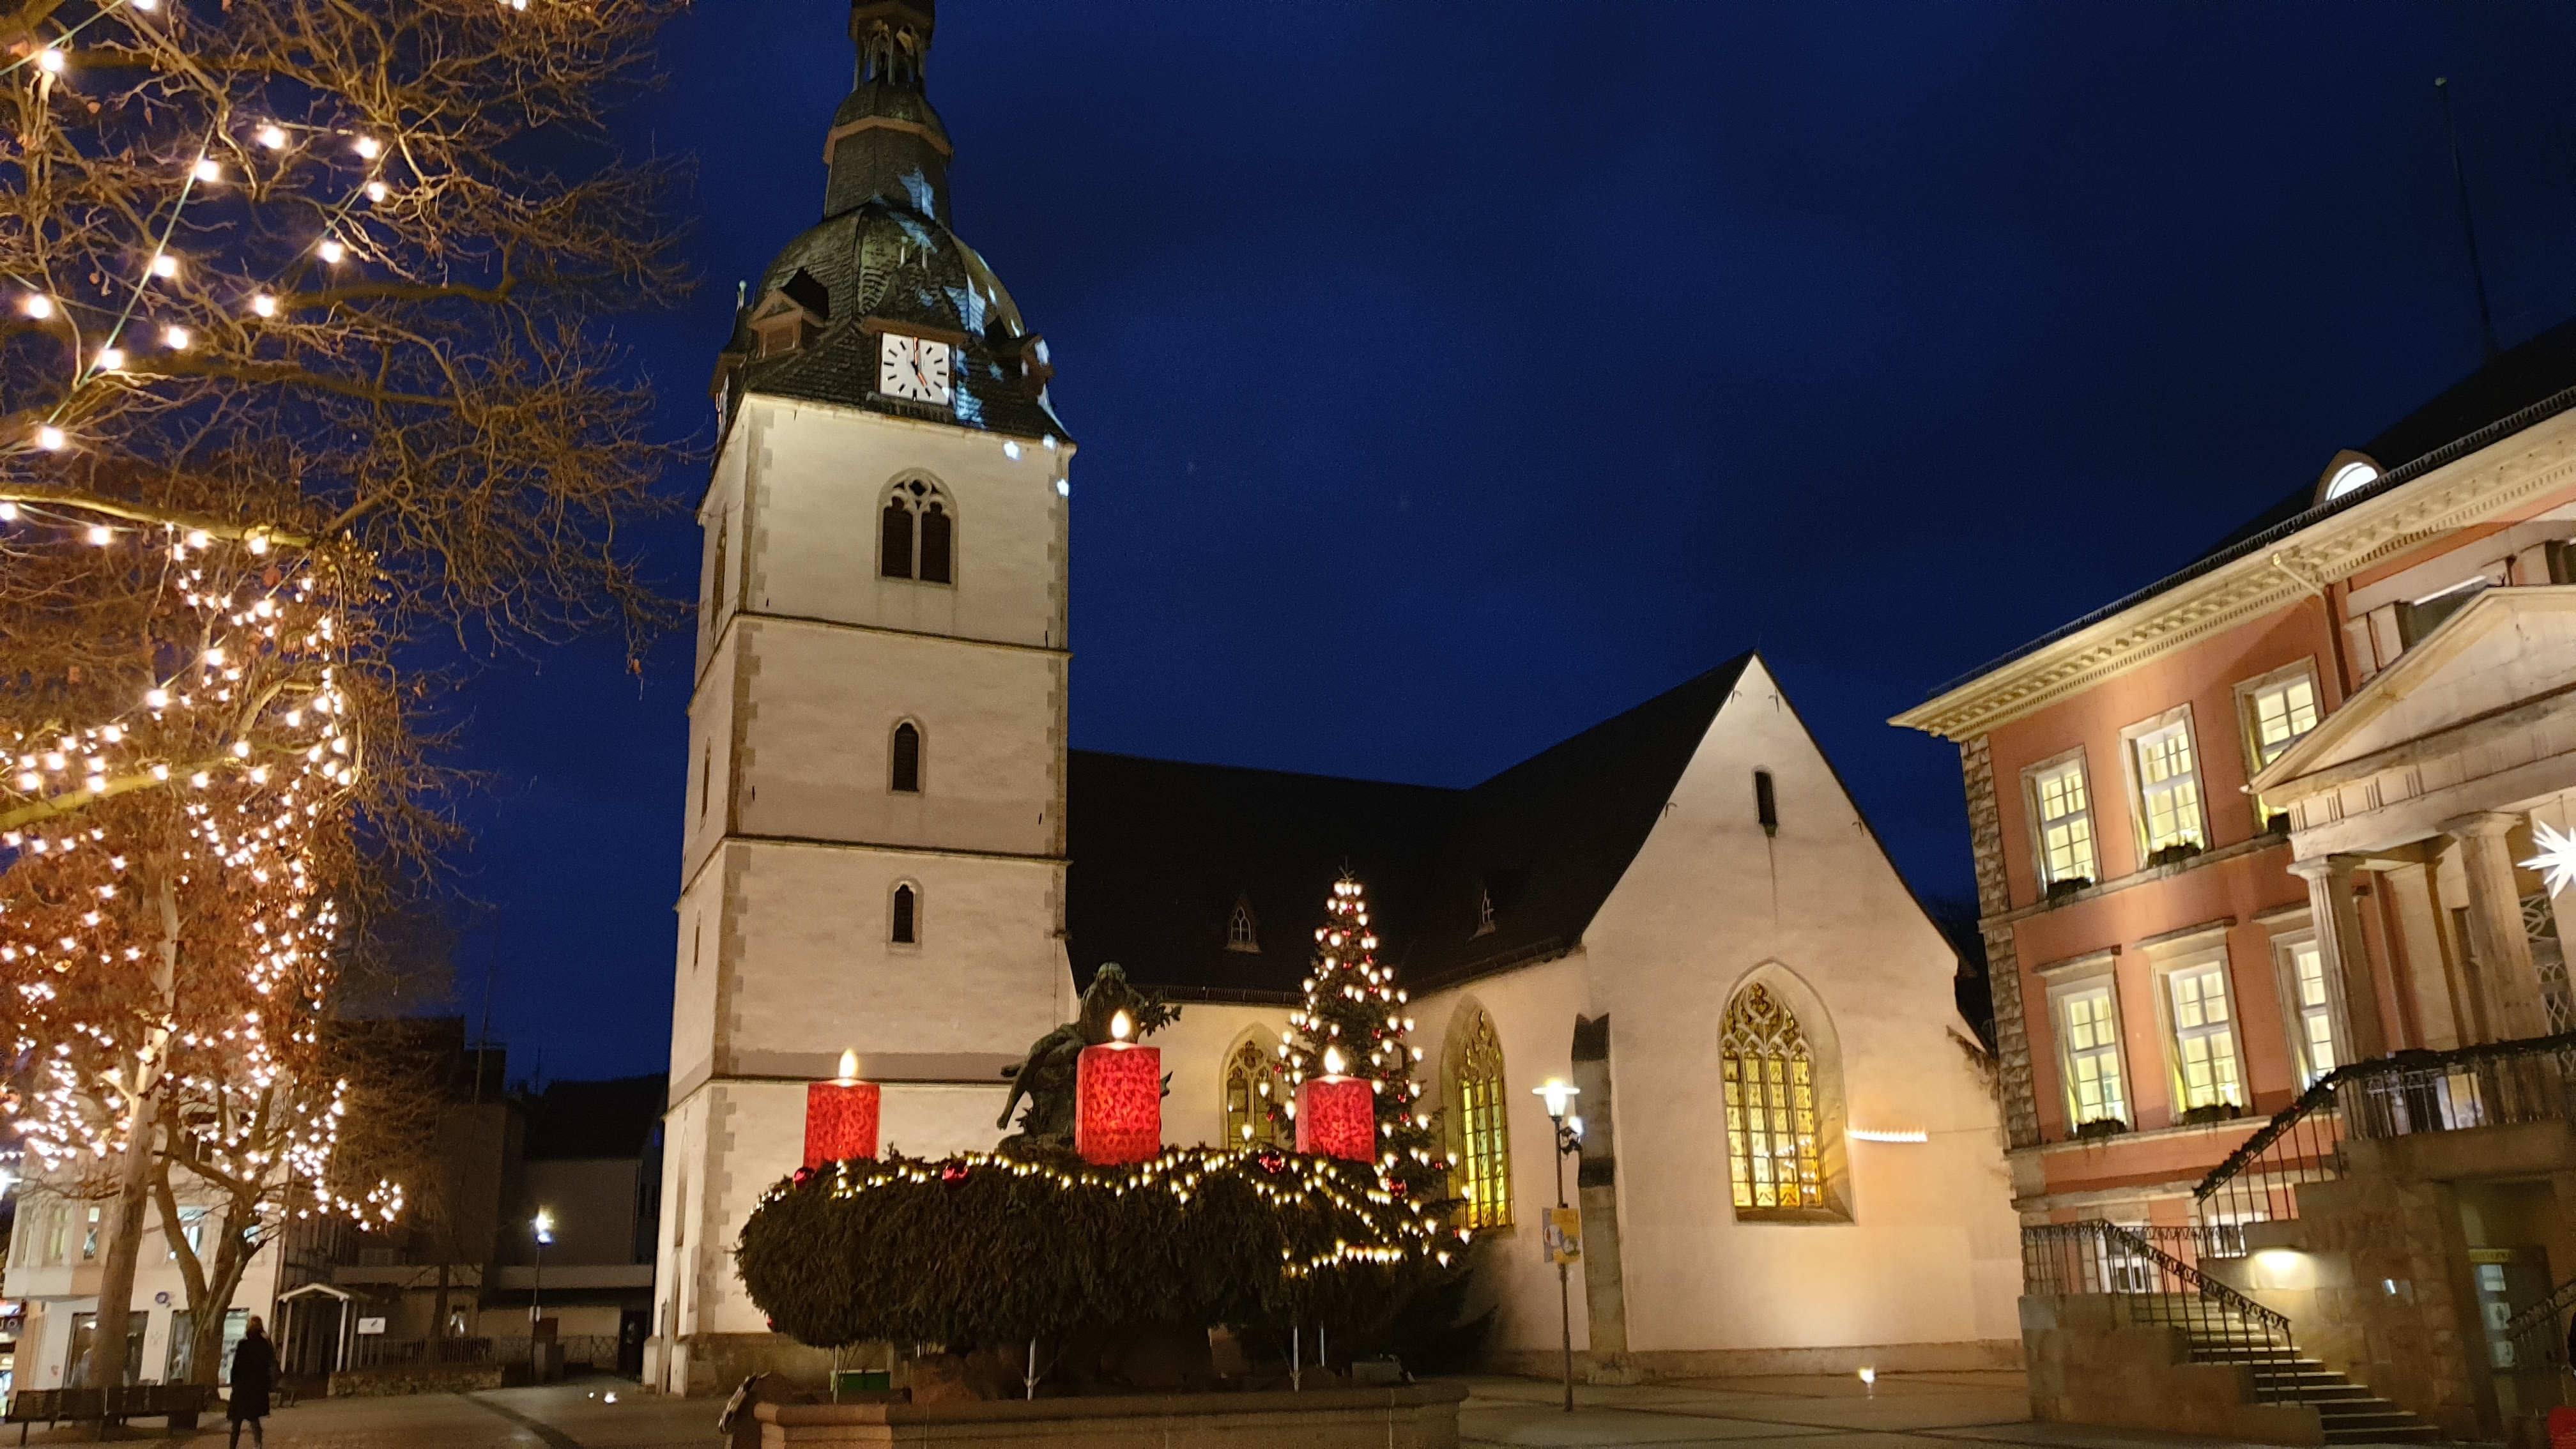 Erlöserkirche am Markt – Evangelisch-reformierte Kirchengemeinde Detmold-Ost, Marktplatz 6 in Detmold